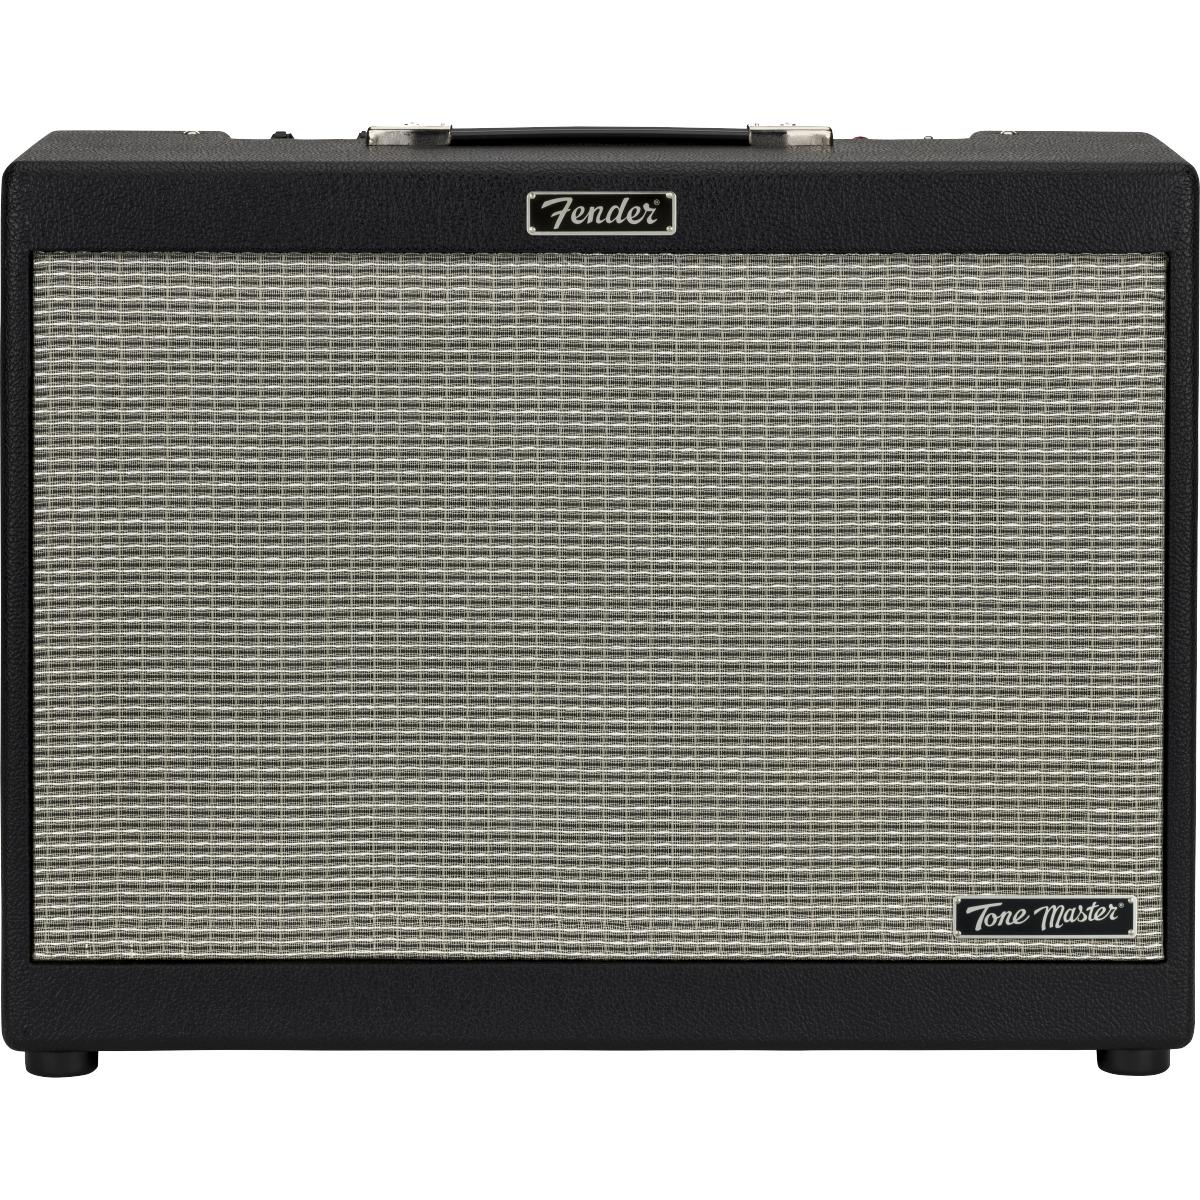 Fender Tone Master FR-12 Full Range Flat Response Powered Speaker 12inch - 2275203000